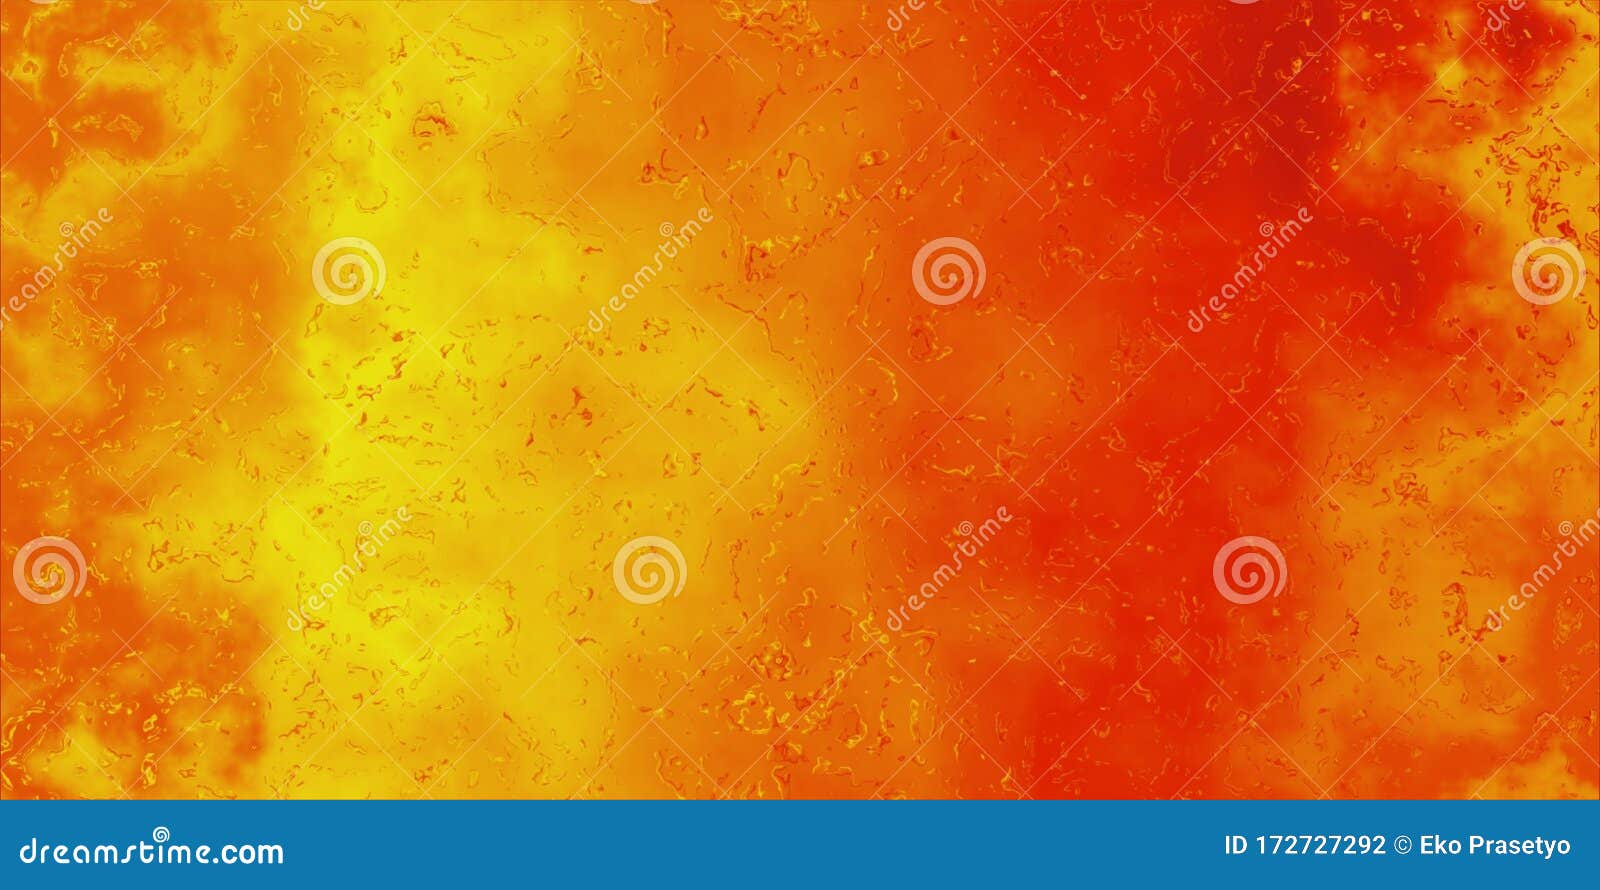 Với hiệu ứng màu sắc tùy chỉnh từ trắng sang đỏ, tác phẩm này sẽ tạo nên khối lượng điểm nhấn độc đáo cho không gian của bạn. Abstract background đầy sáng tạo kết hợp với gam màu cam sẽ là sự lựa chọn lý tưởng cho mọi người.